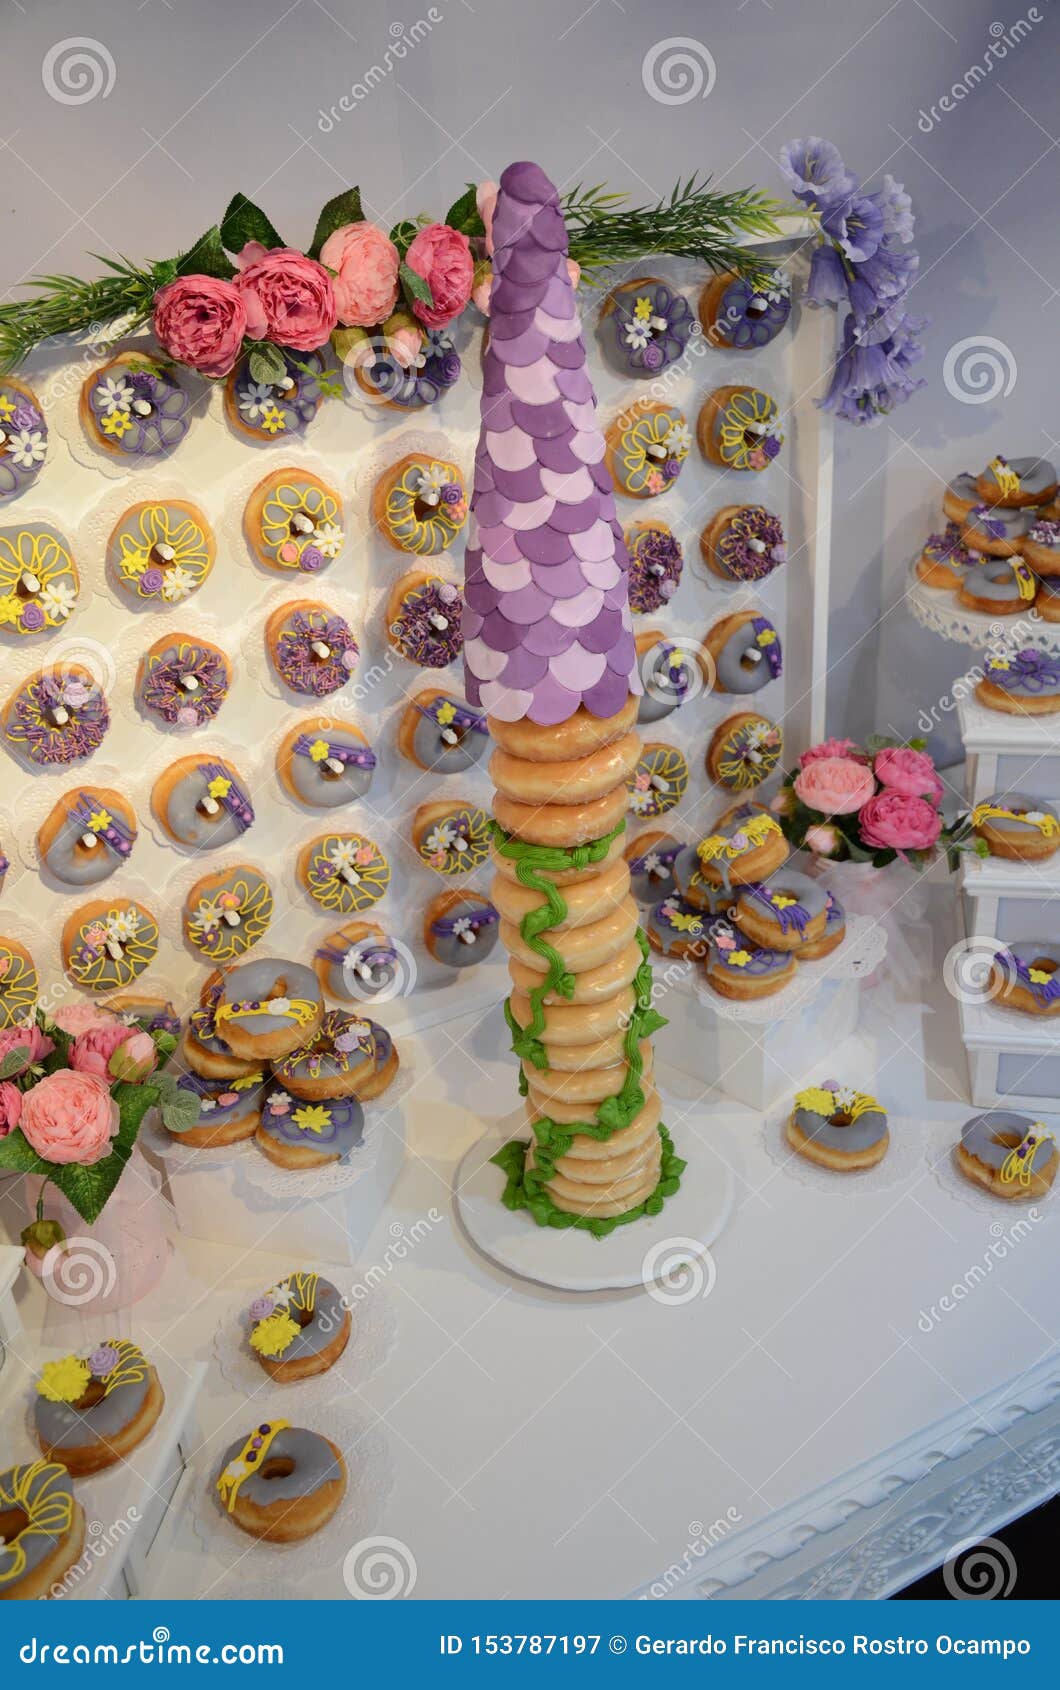 rapunzel inspired doughnut birthday cake